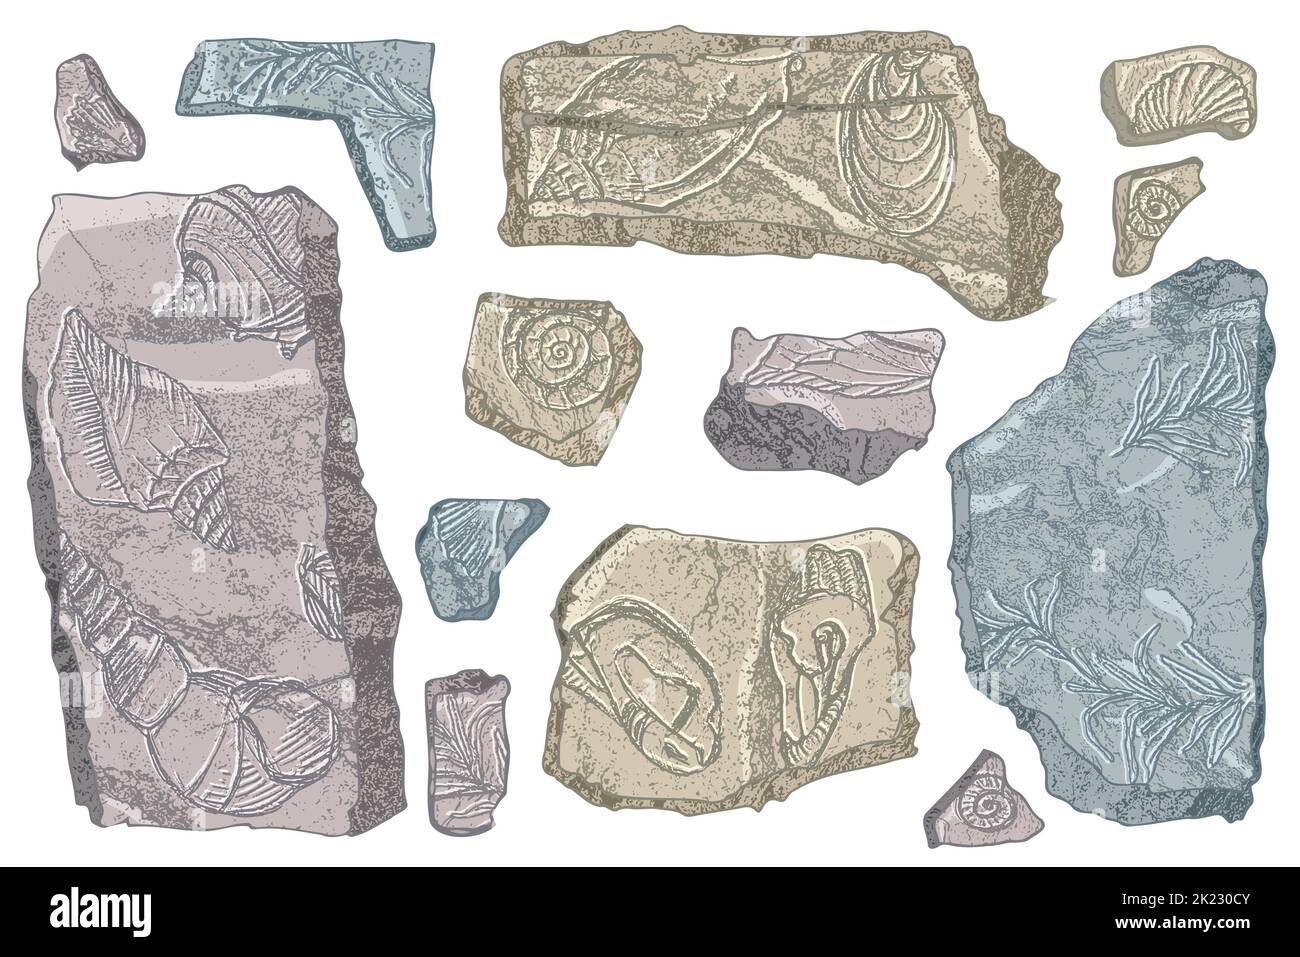 Set von Steinen Muscheln und Pflanzen Hand gezeichnete Ozeanschale oder Muschel Muschel Jakobsmuschel Meer Unterwasser Tier fossil Nautik und Aquarium, Thema Meer Stock Vektor